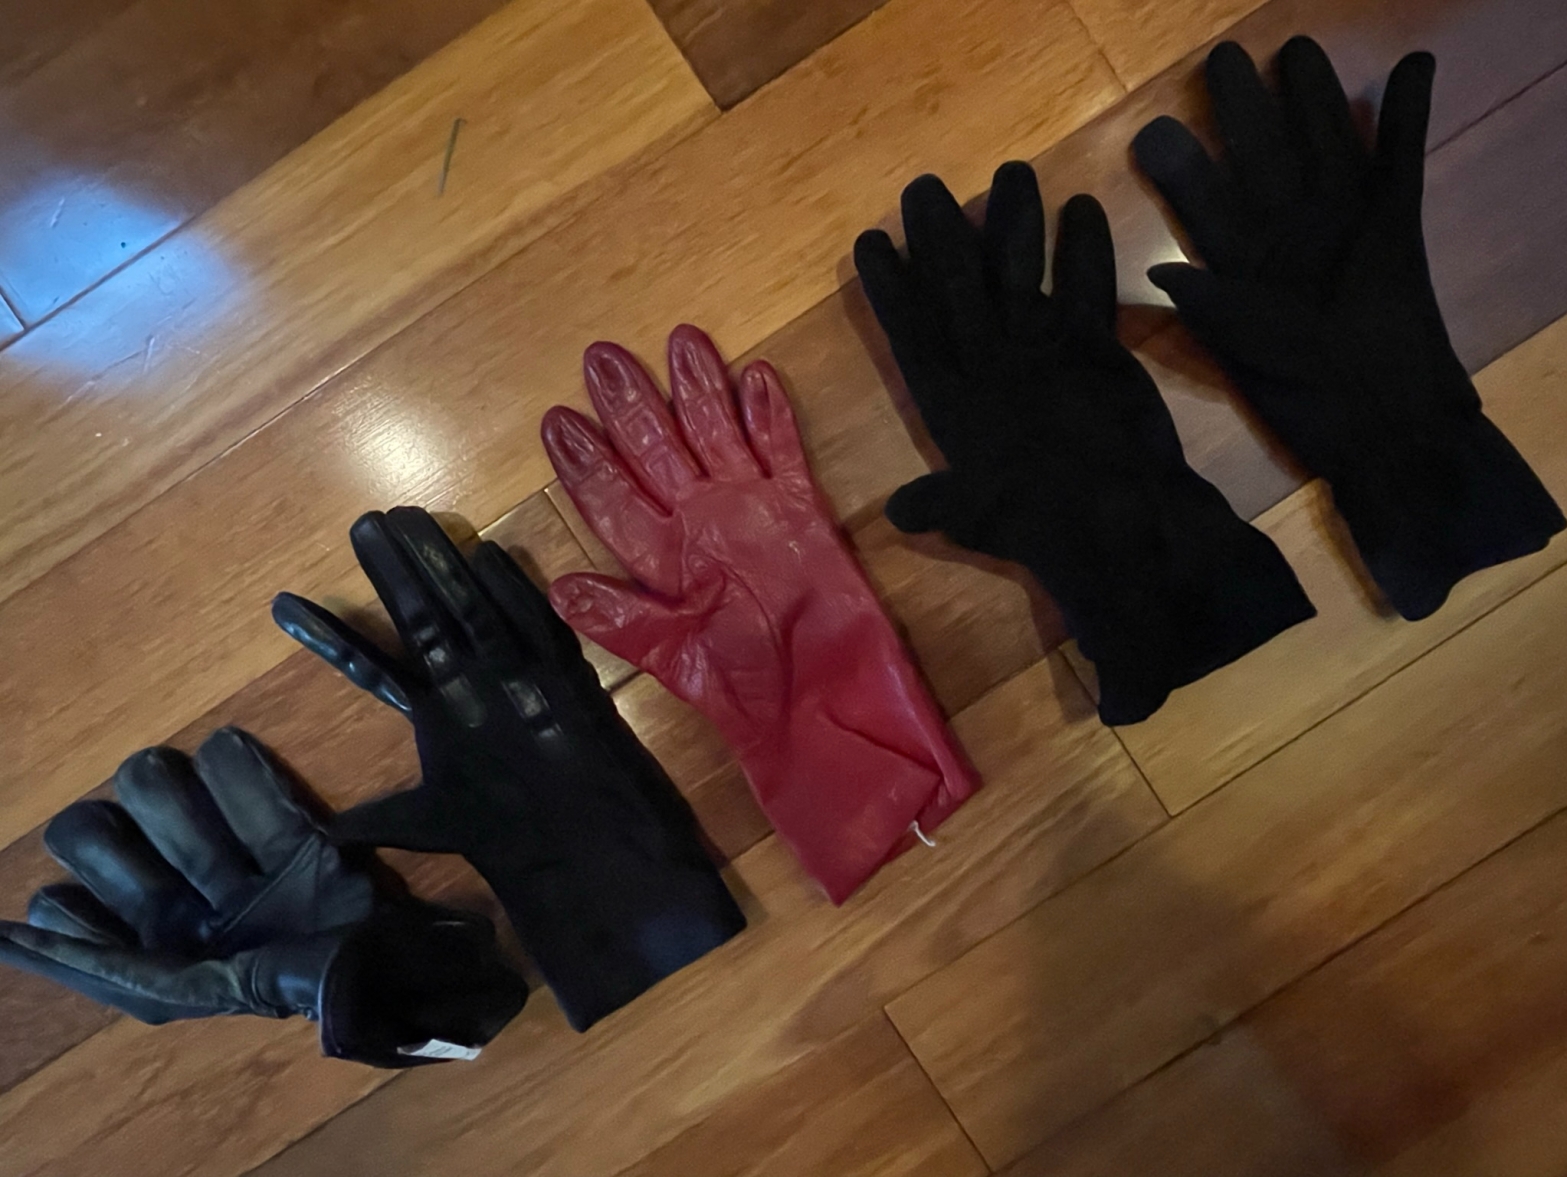 Five left gloves